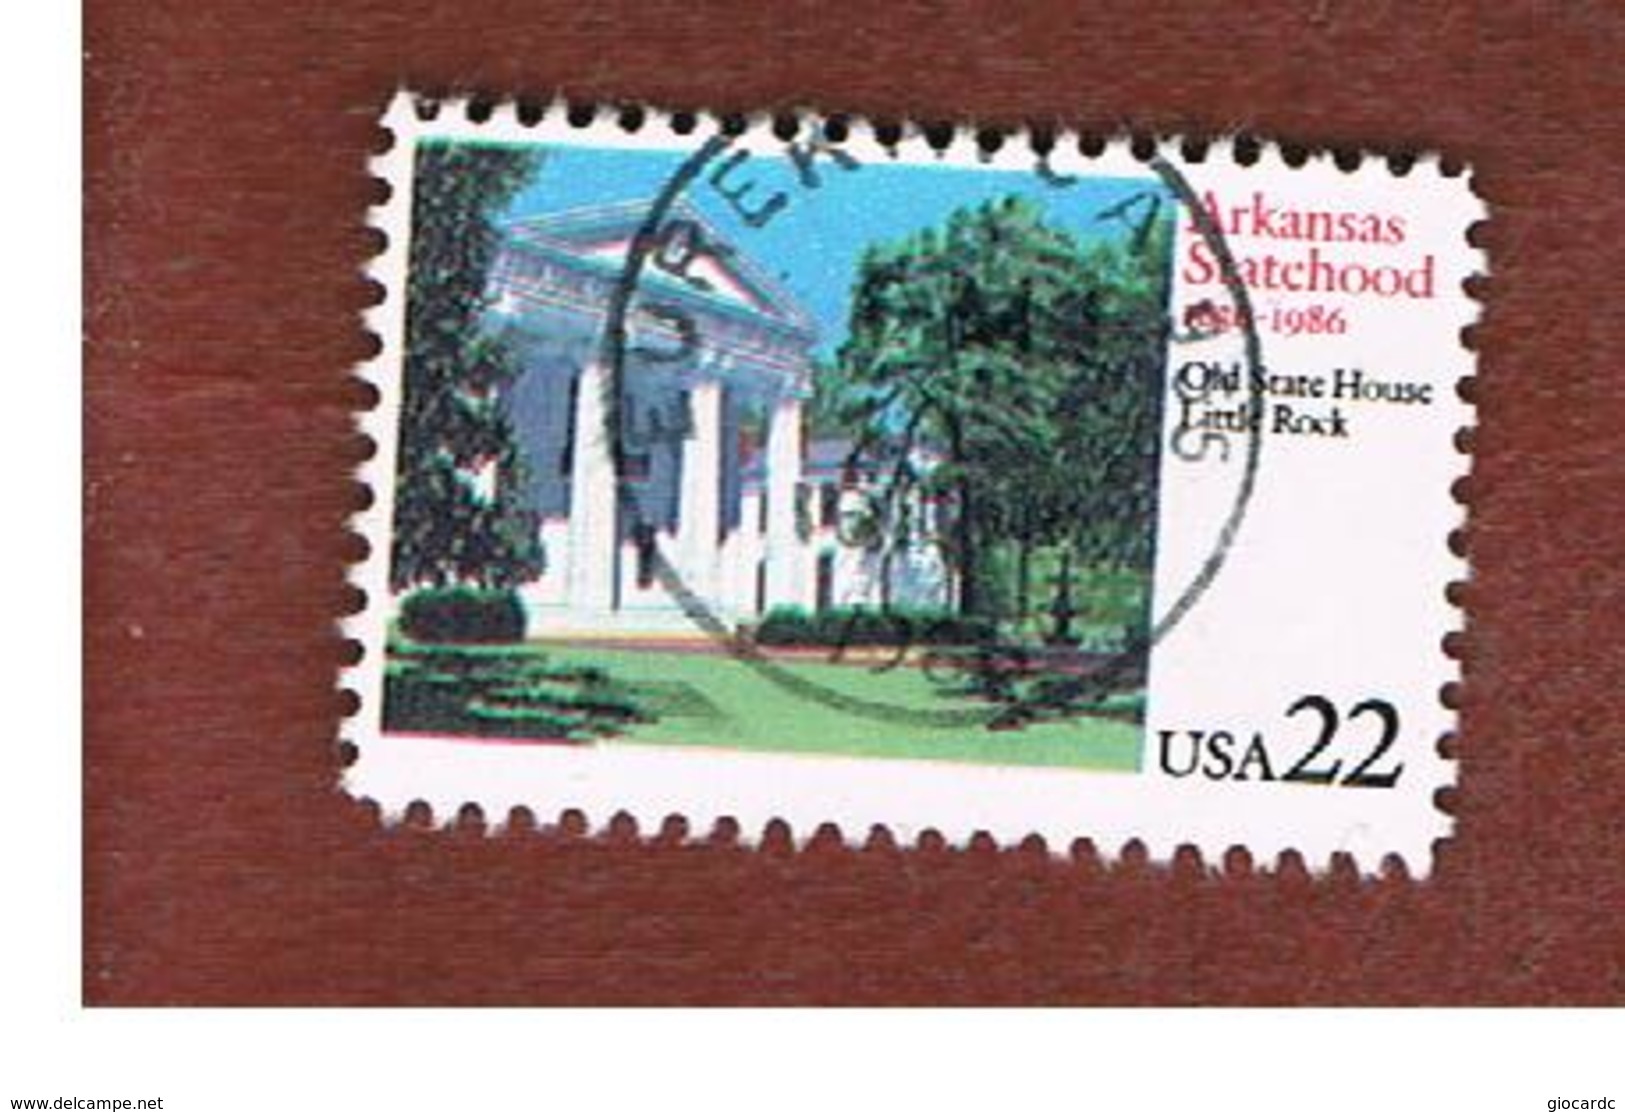 STATI UNITI (U.S.A.) - SG 2208  - 1986  150^ ANNIVERSARY OF ARKANSAS STATEHOOD - USED - Usati